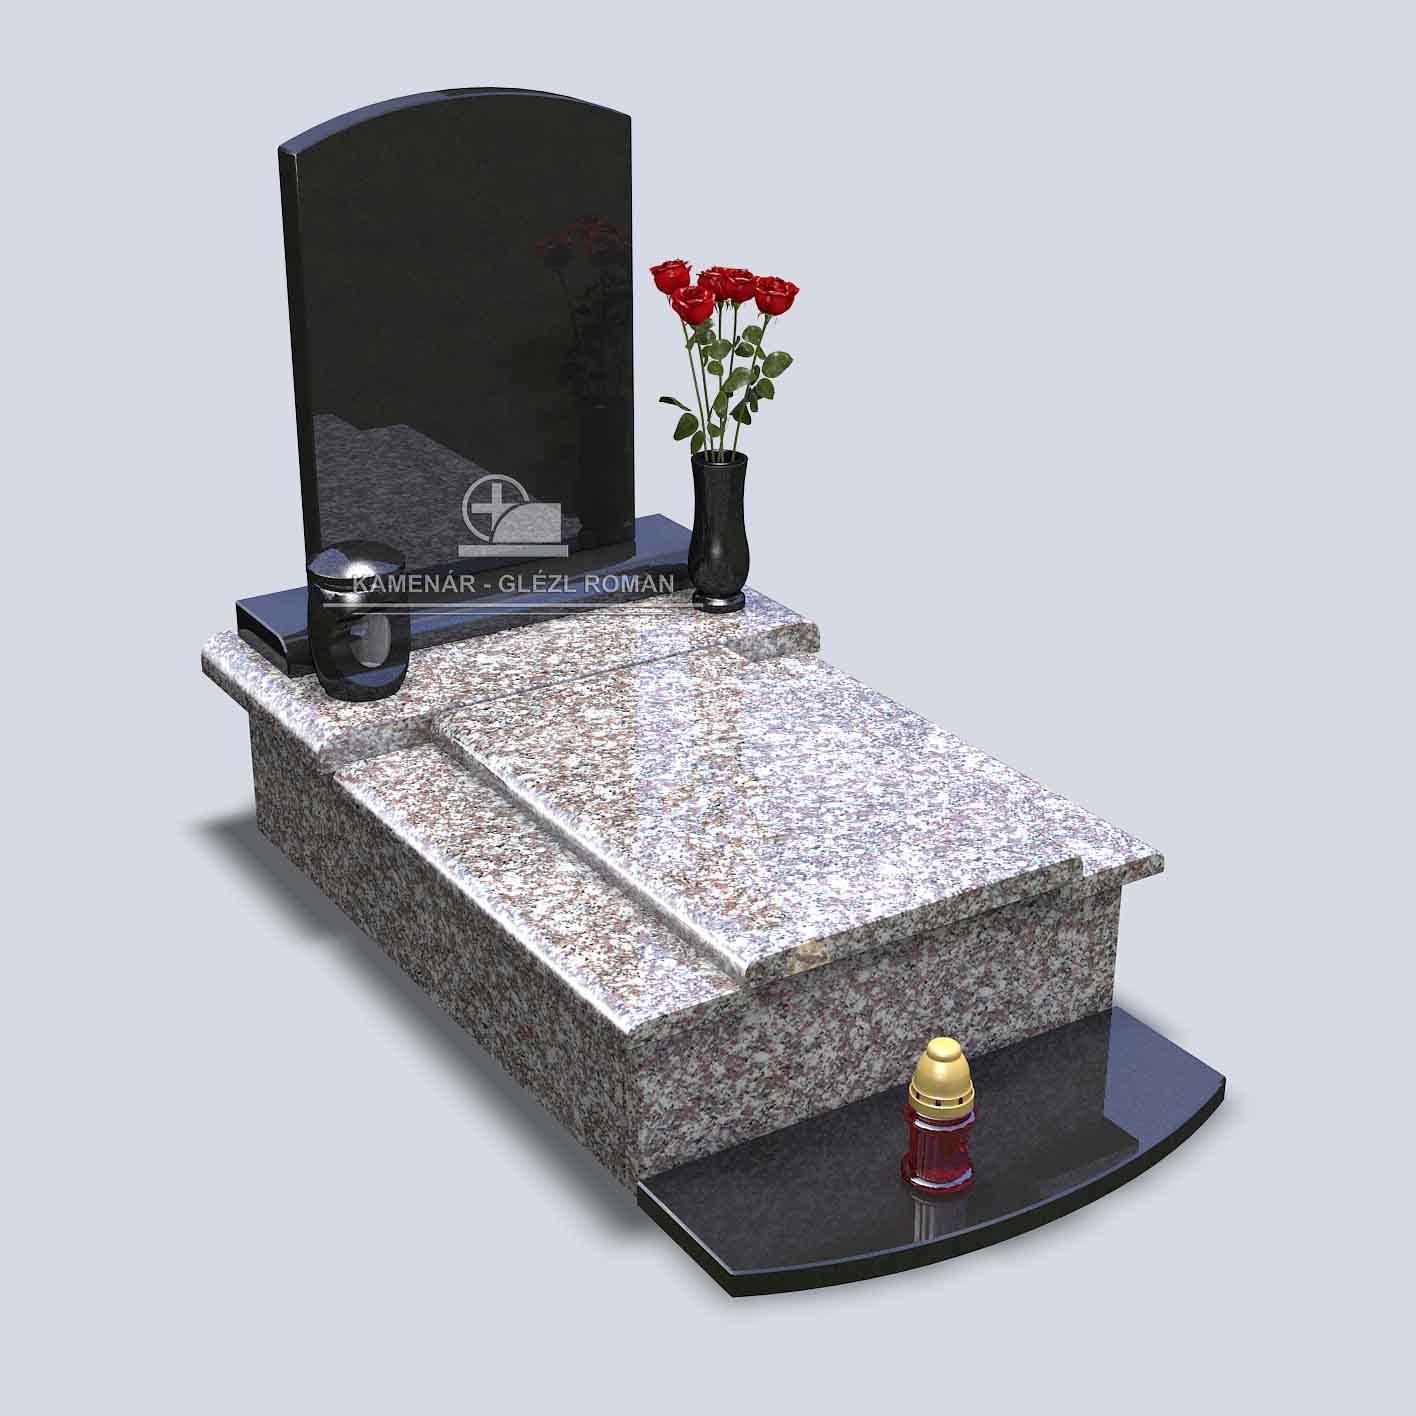 Urnový hrob s čiernou nápisnou tabuľou, s bledými zaoblenými krycími doskami, so svietnikom a vázou s ružami